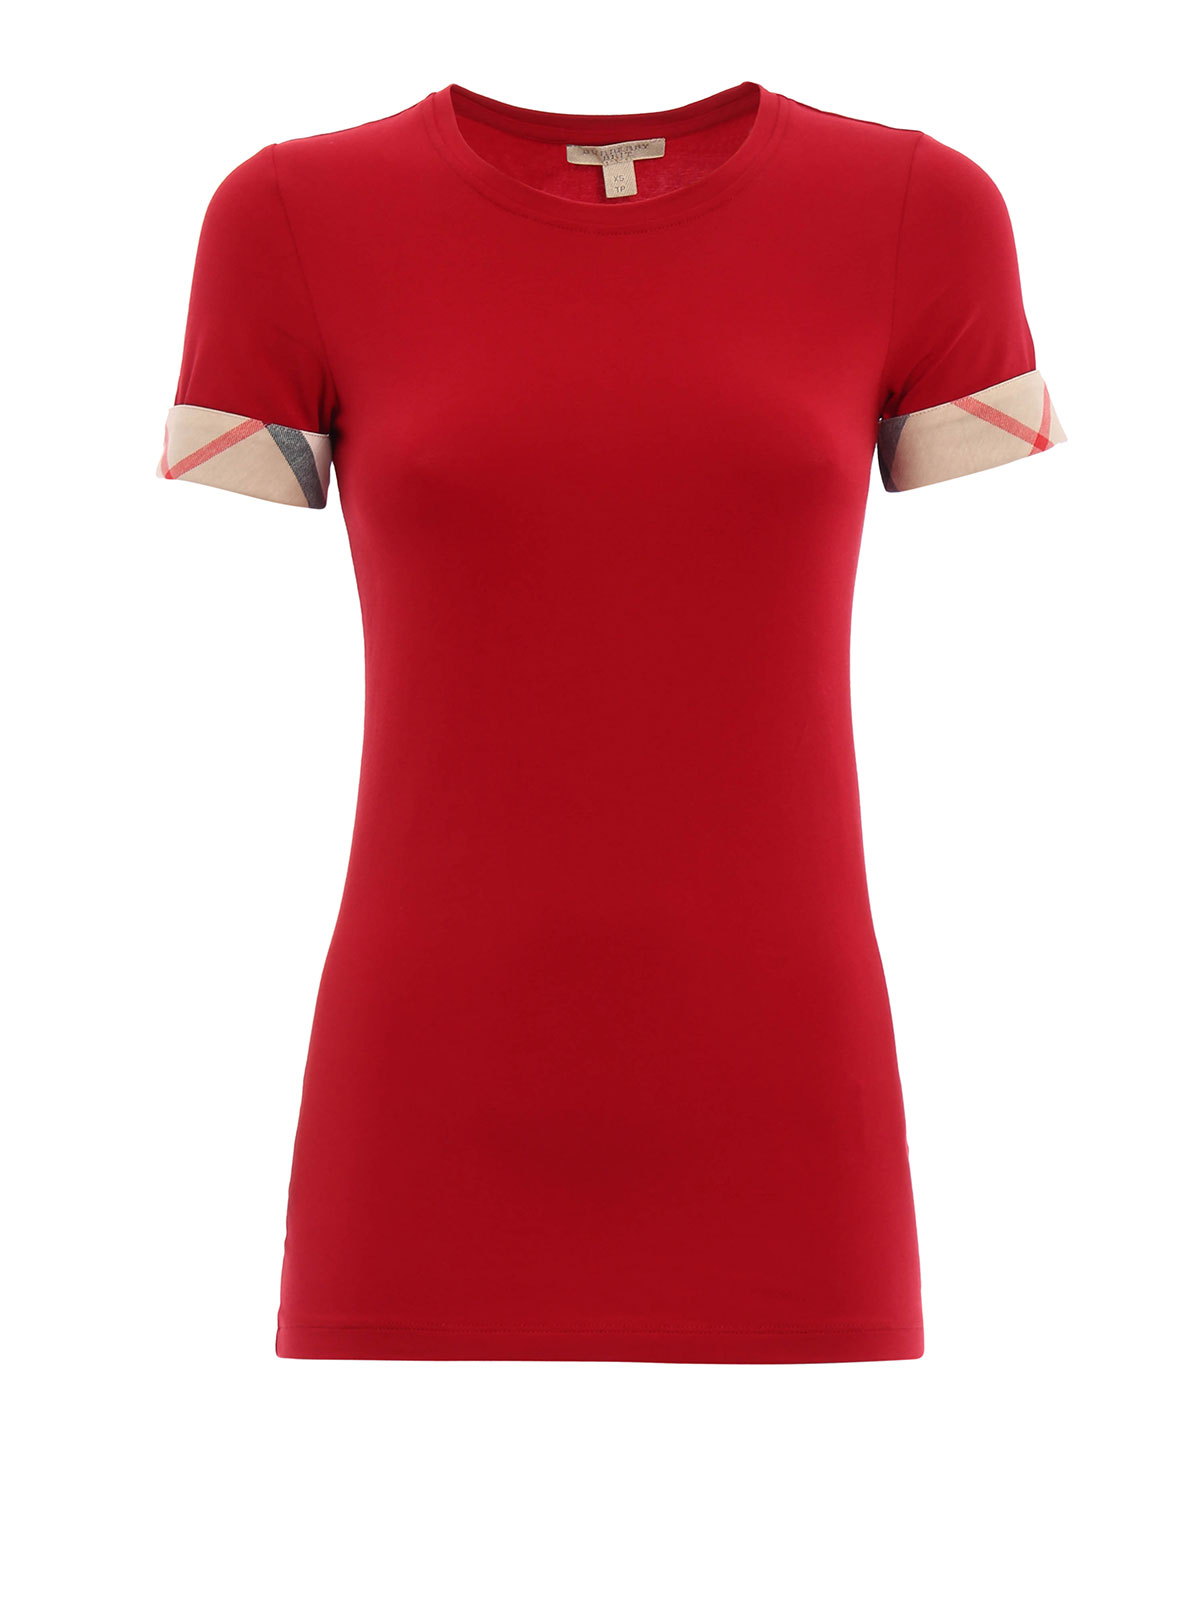 Camisetas Buttero - Camiseta Roja Para Mujer